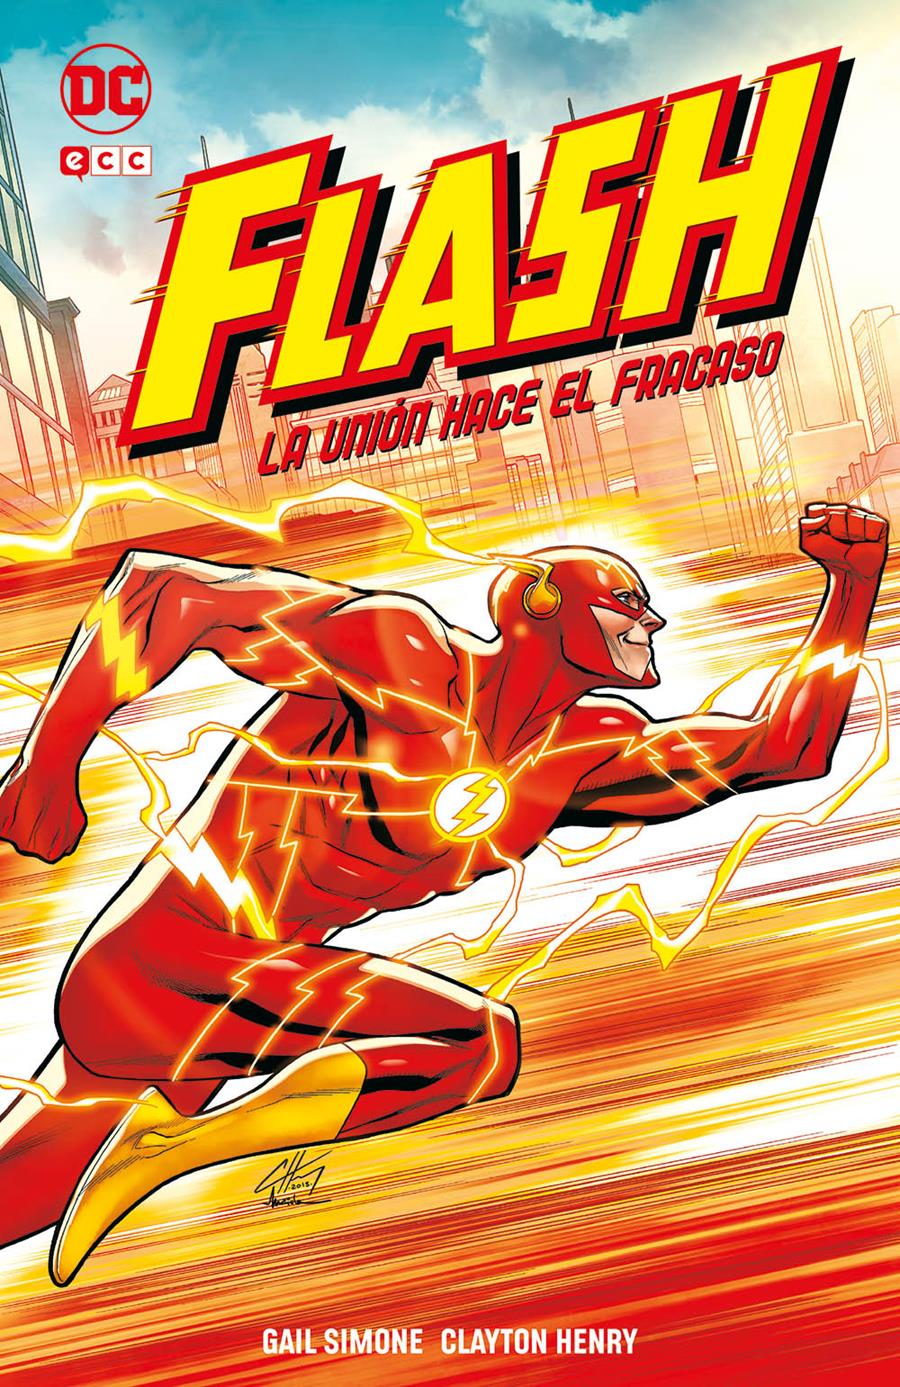 Flash: La unión hace el fracaso | N0221-ECC31 | Clayton Henry / Gail Simone | Terra de Còmic - Tu tienda de cómics online especializada en cómics, manga y merchandising